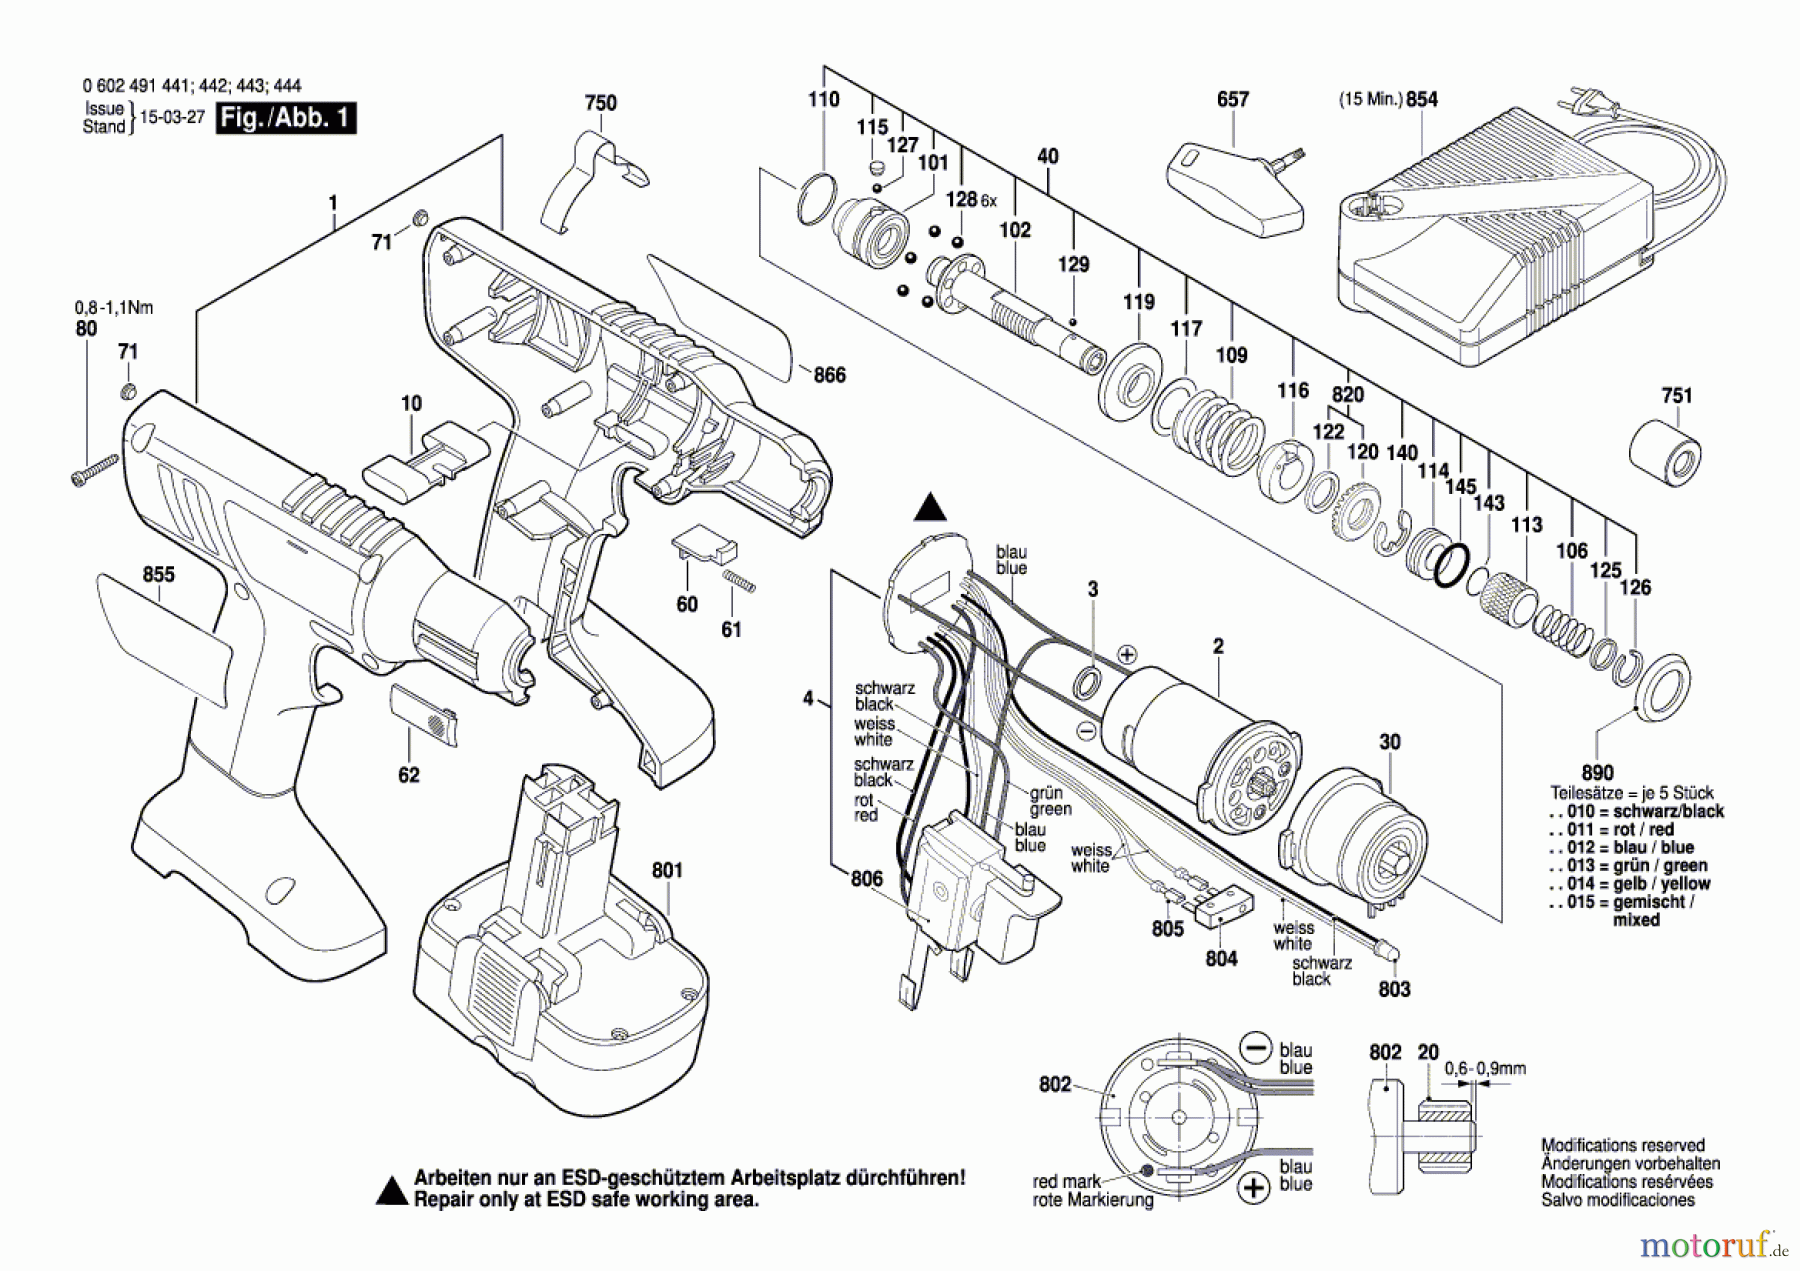  Bosch Akku Werkzeug Akku-Schrauber BT-EXACT 8 Seite 1